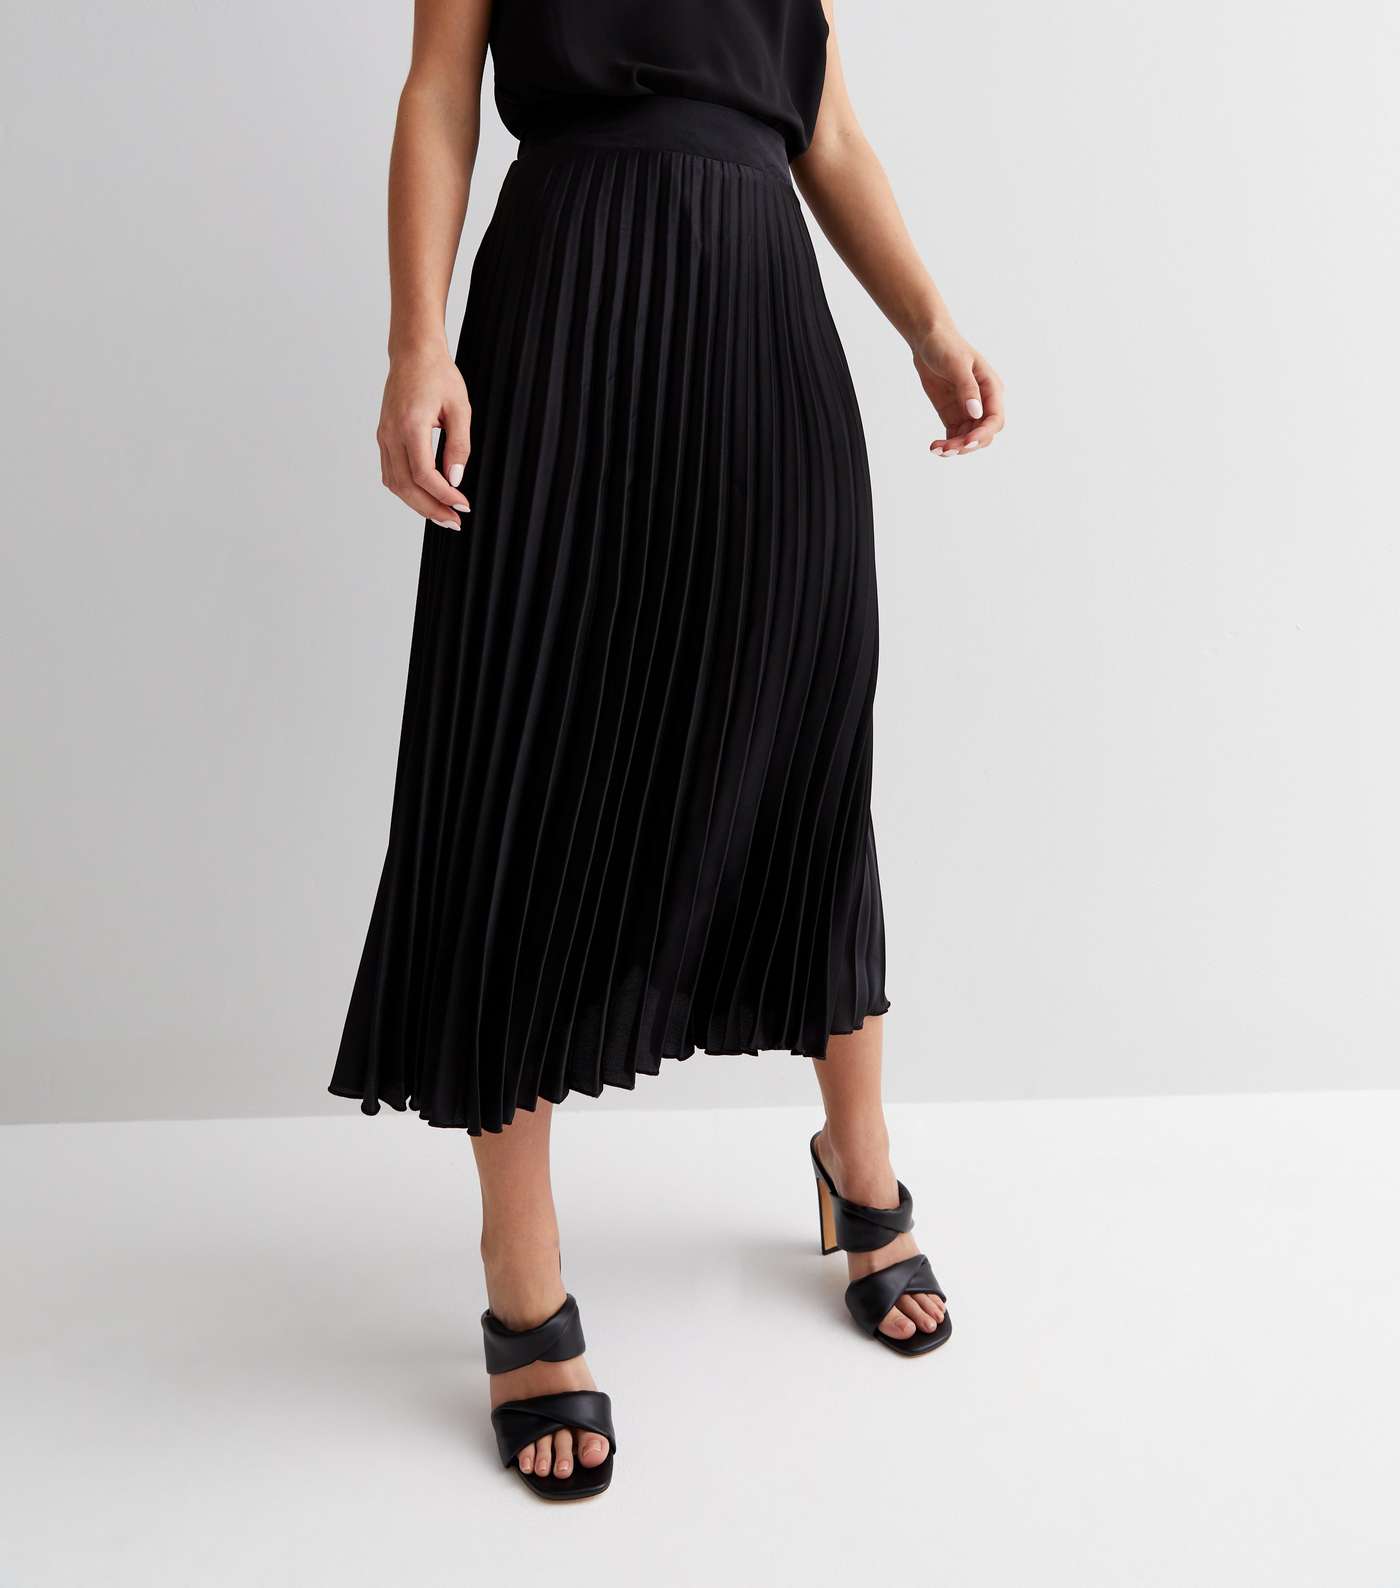 Petite Black Satin Pleated Midaxi Skirt Image 2